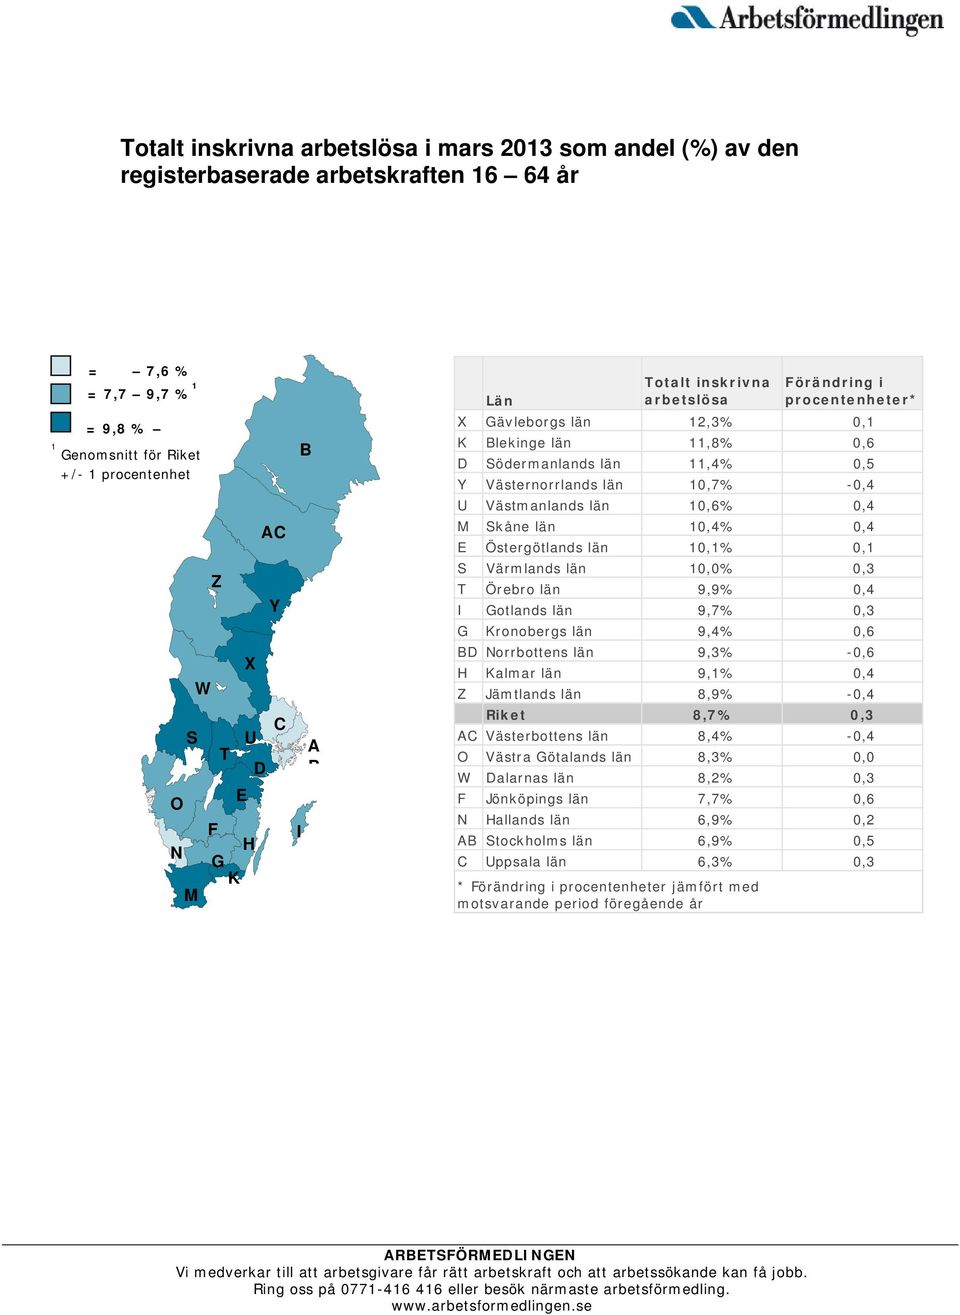 Västmanlands län 10,6% 0,4 M Skåne län 10,4% 0,4 E Östergötlands län 10,1% 0,1 S Värmlands län 10,0% 0,3 T Örebro län 9,9% 0,4 I Gotlands län 9,7% 0,3 G Kronobergs län 9,4% 0,6 BD Norrbottens län